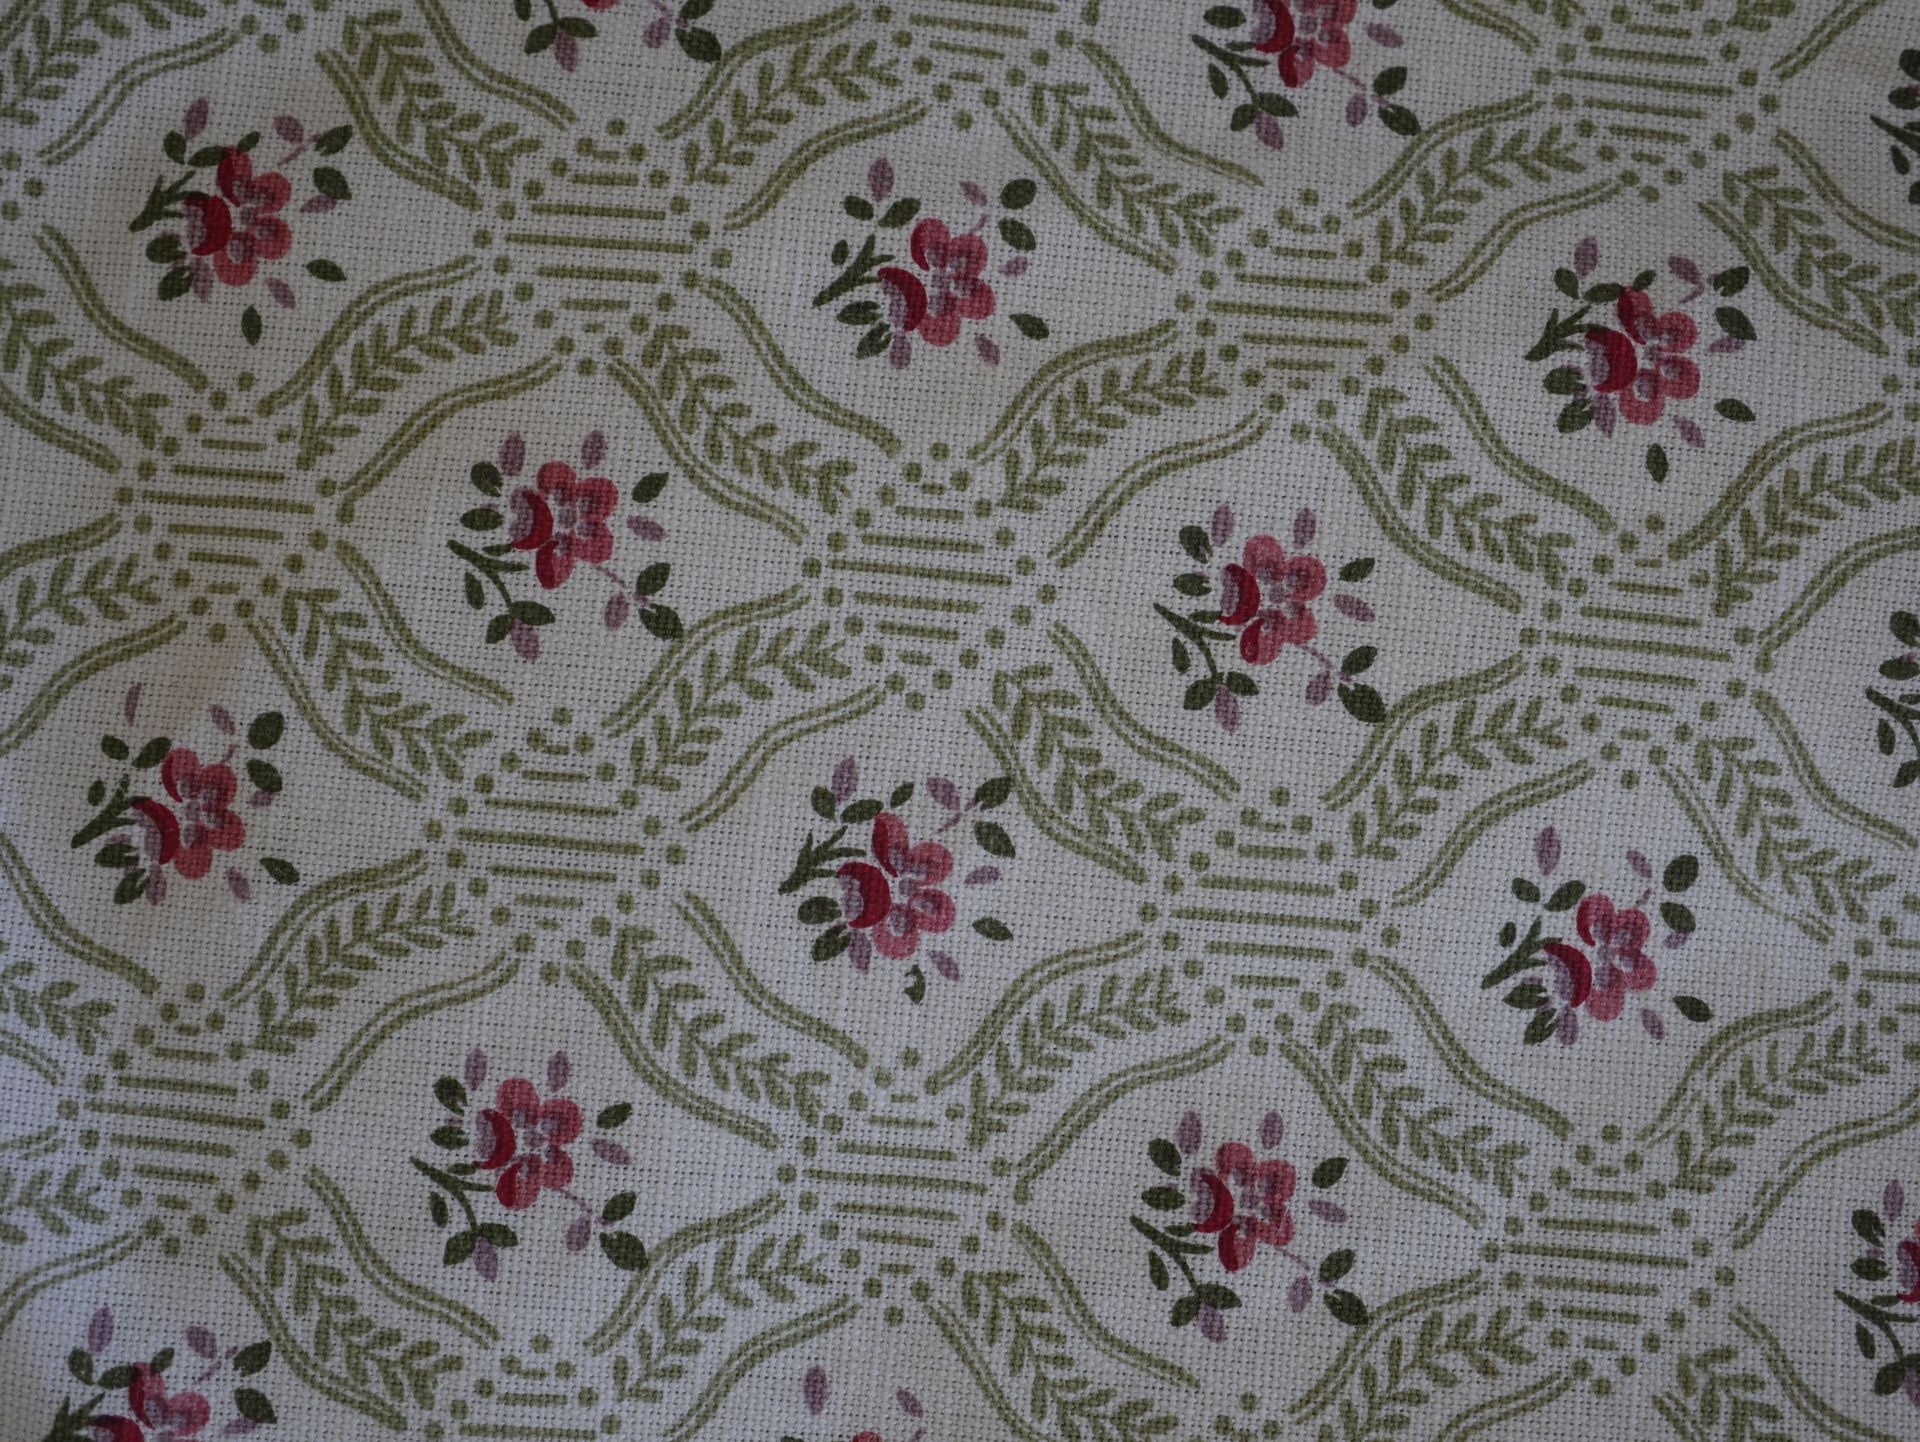 Null 两副米色带花的兰帕斯窗帘。高度为320厘米，宽度为90厘米。

附上一对有花格和花朵设计的棉质窗帘。高度320厘米，宽度54厘米，每个